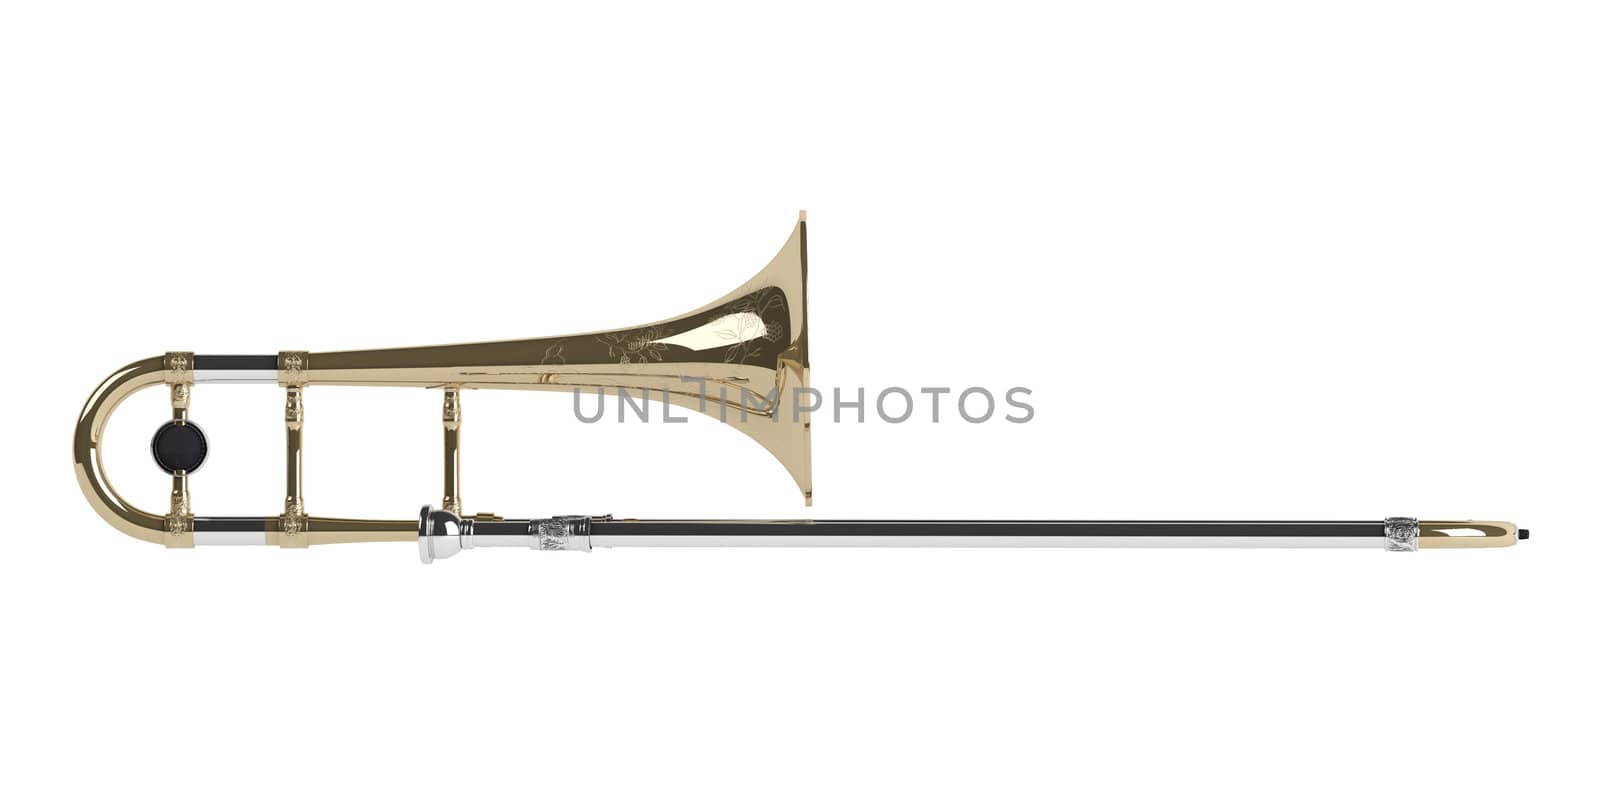 Trombone isolated on white background